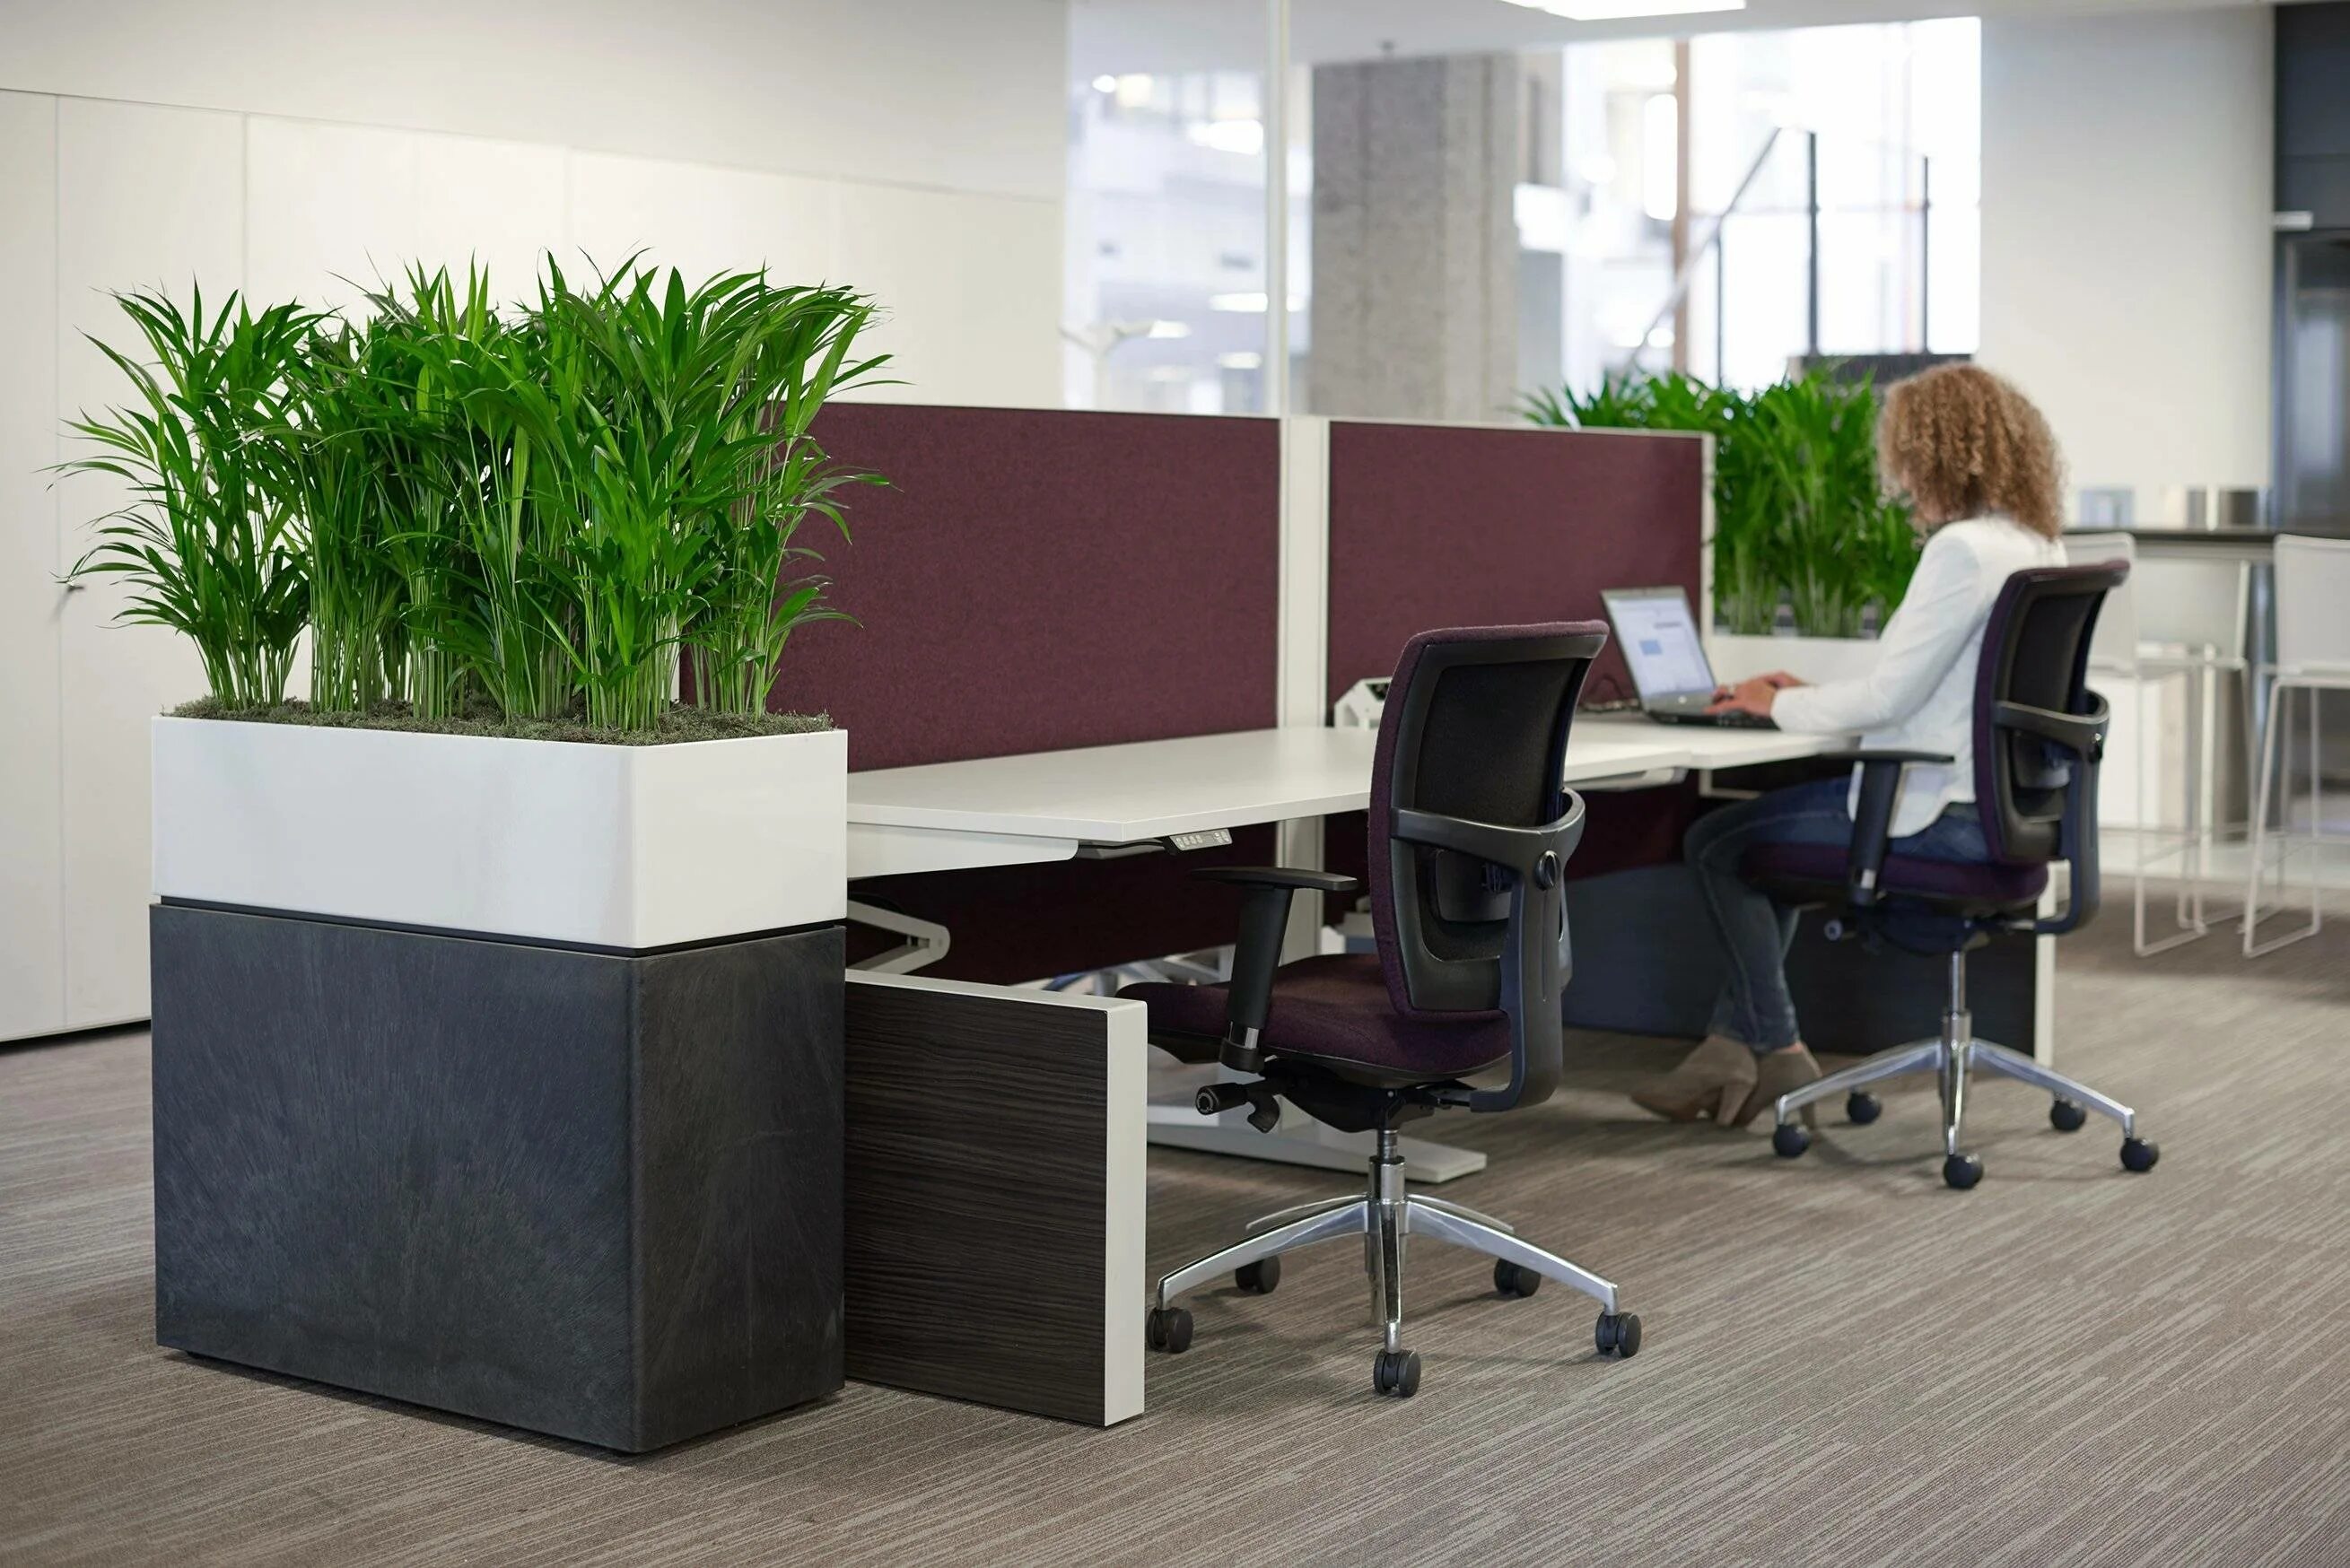 Растения для офиса. Озеленение офиса. Офисные цветы. Растения в интерьере офиса. Музыка для офиса без слов